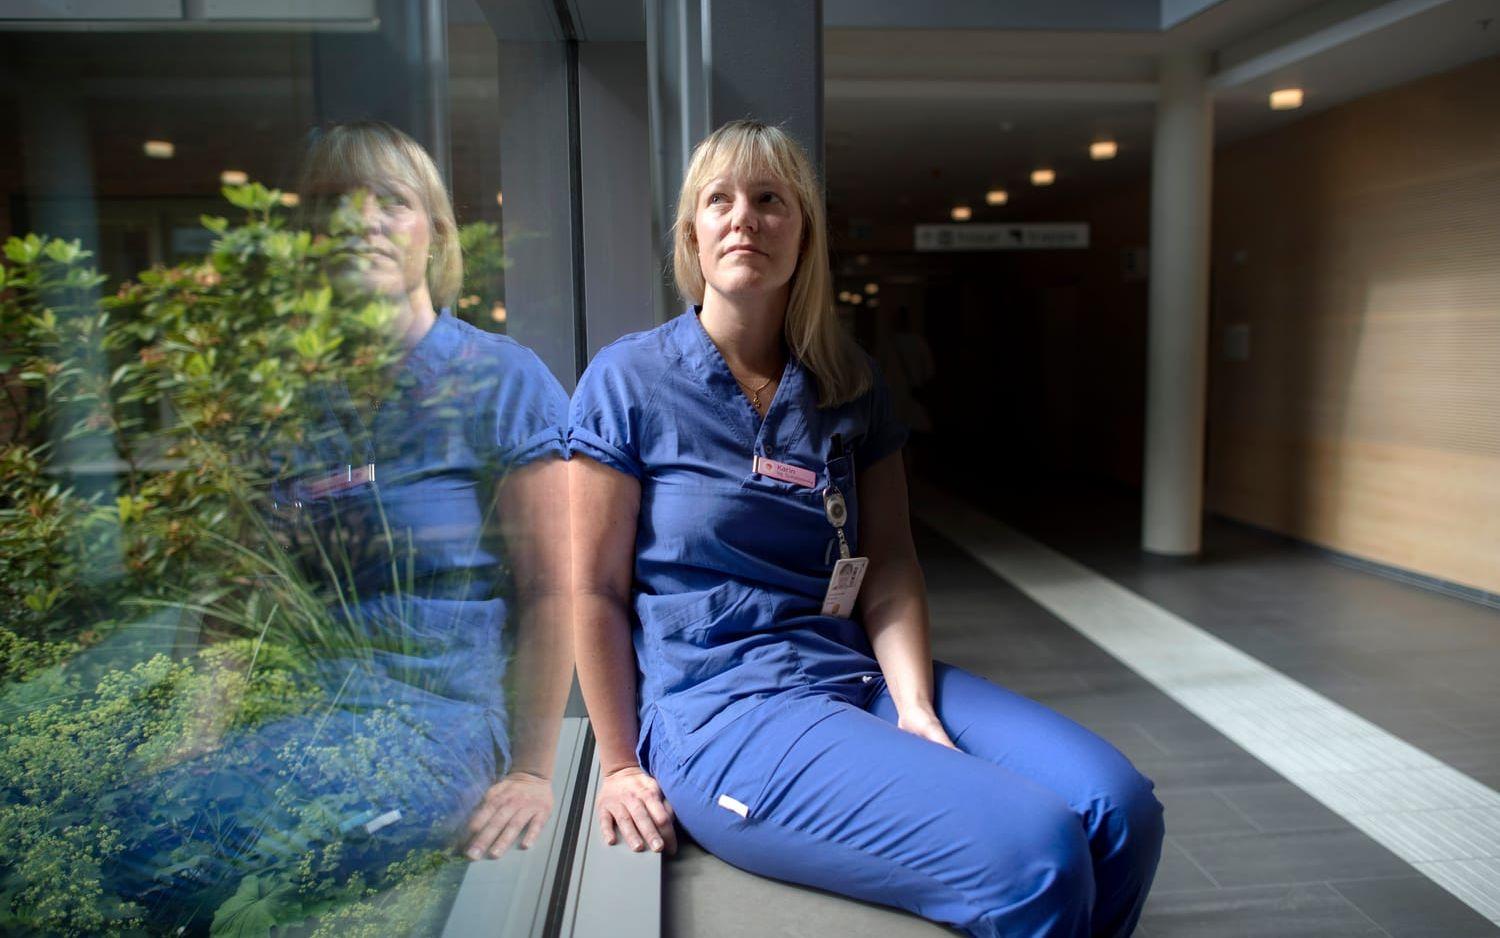 Karin Schelin har jobbat fyra år som sjuksköterska och är nu en av de mest erfarna på strokenheten. "Det är ett fantastisk jobb, men nu känns det jättetråkigt", säger hon.